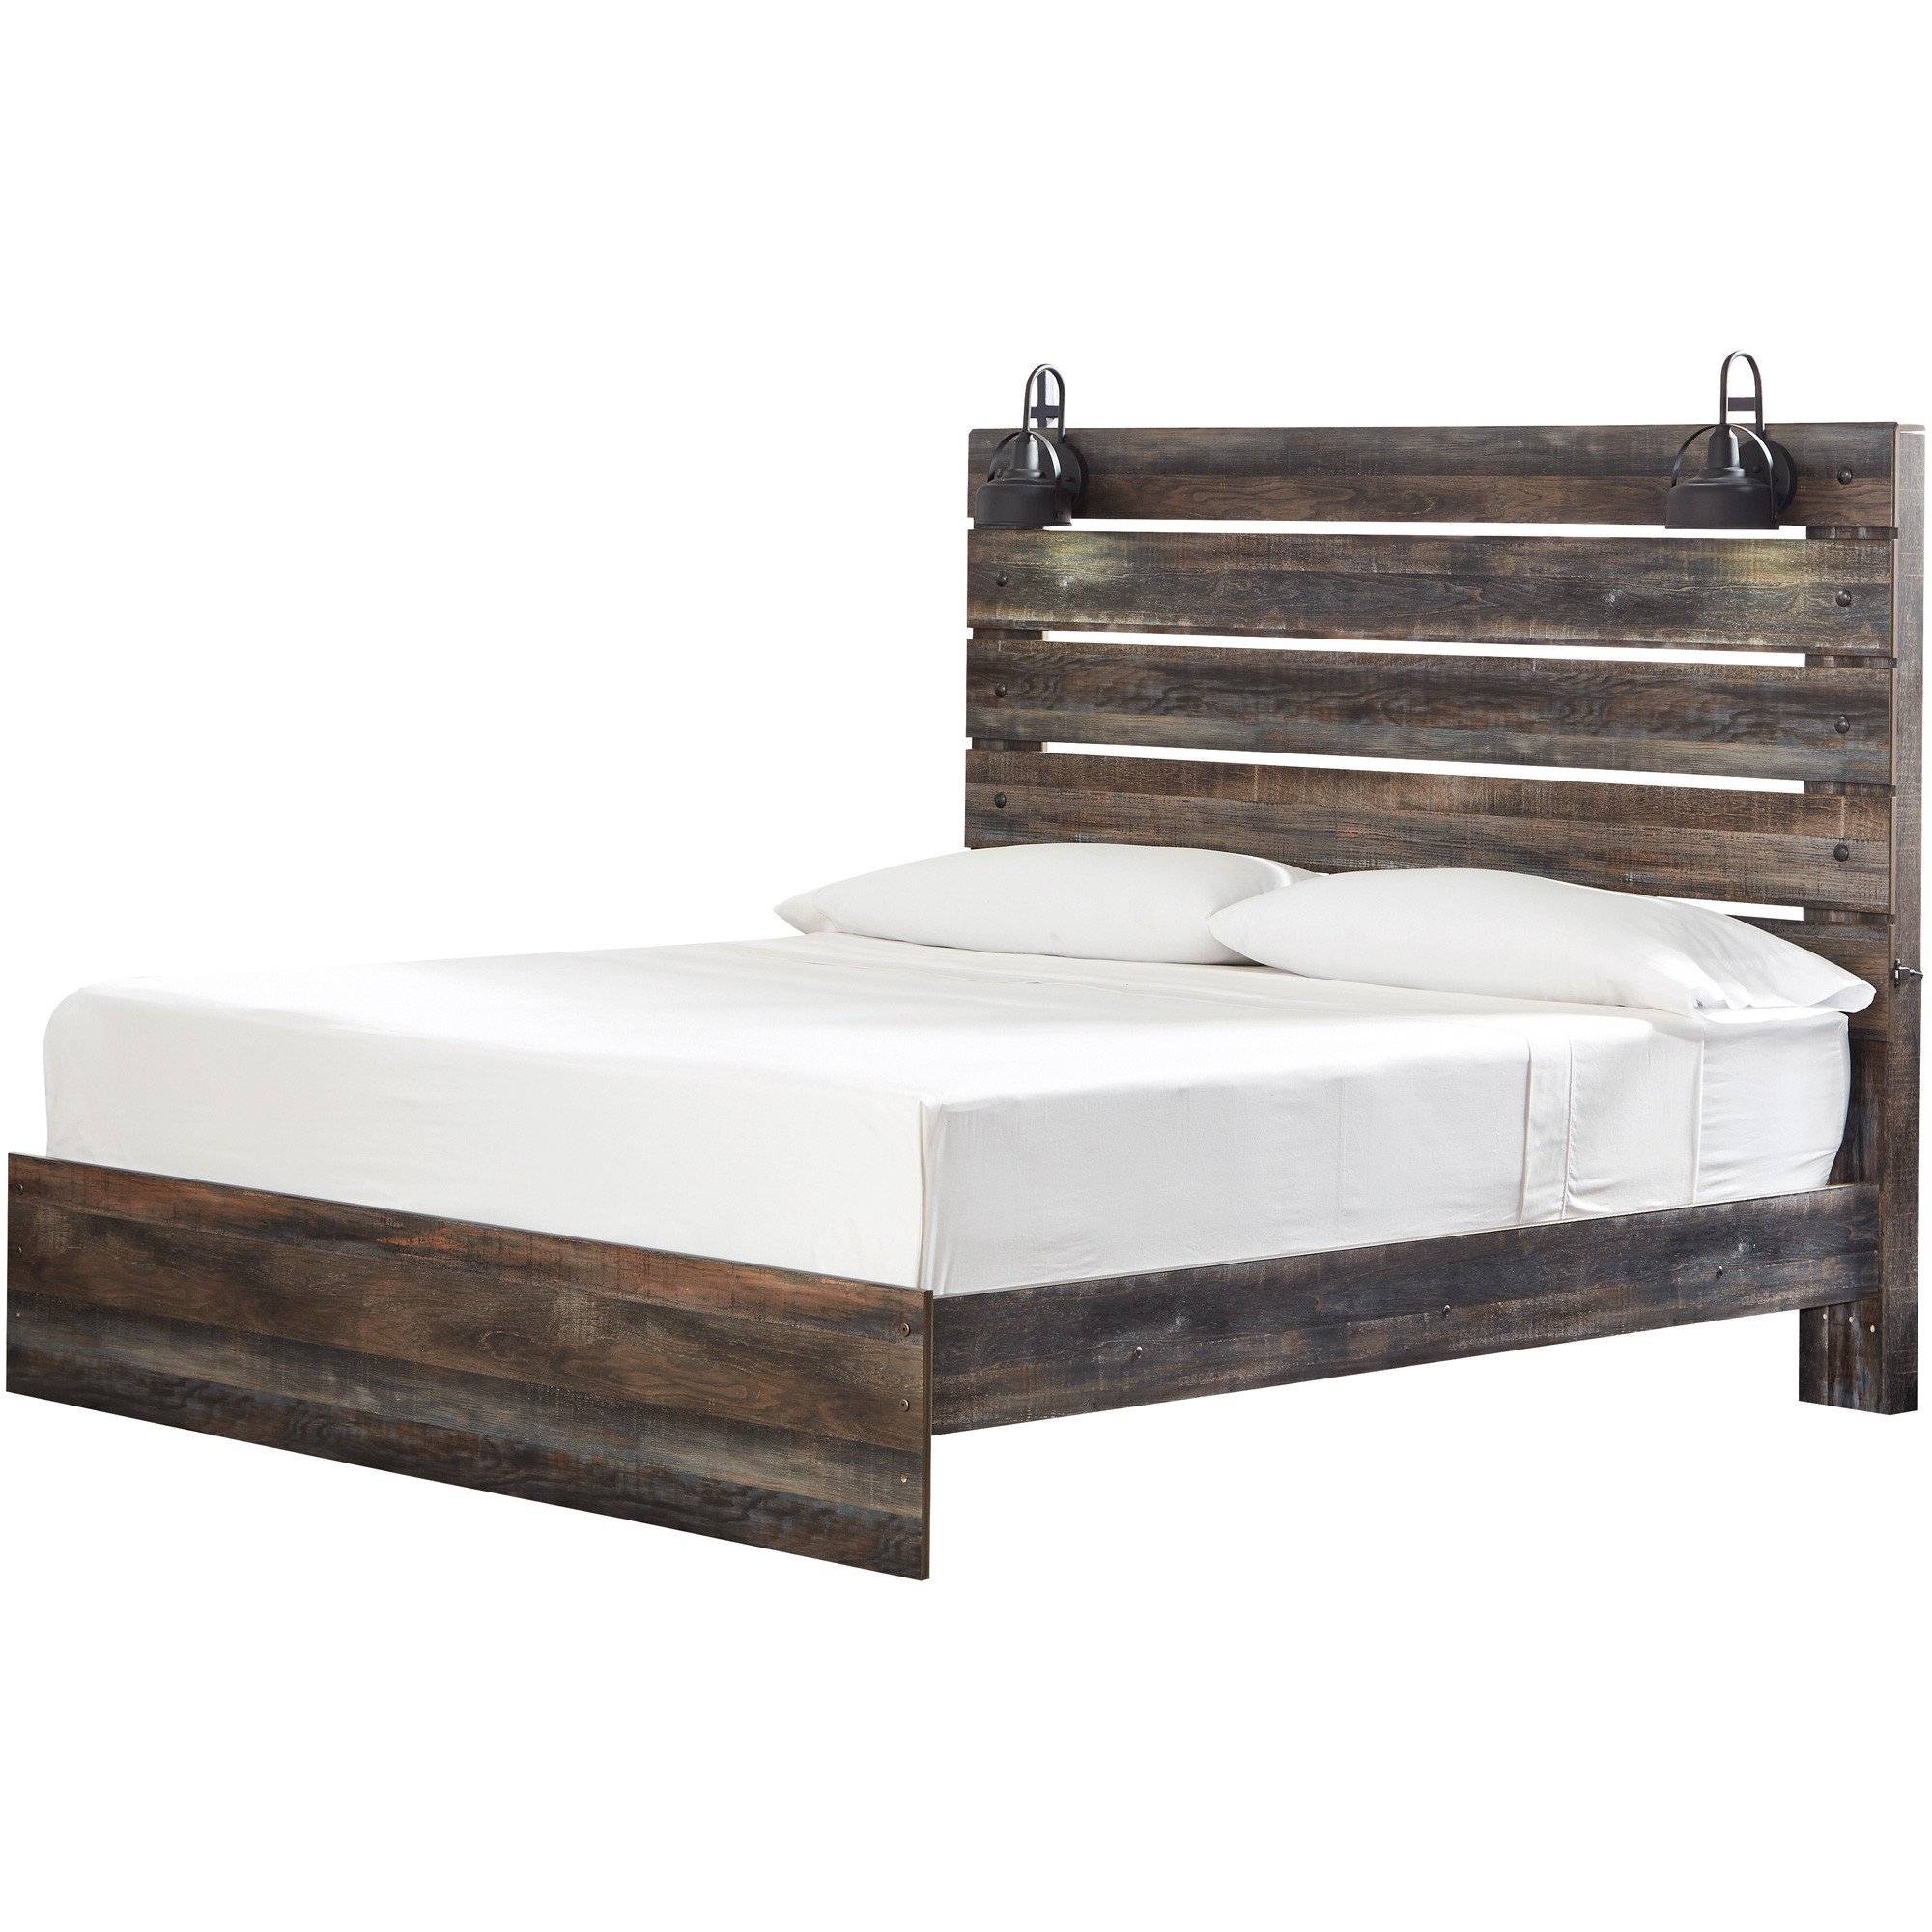 Wood and Metal Bedroom Inspirational Drystan Panel Bed Bedrooms